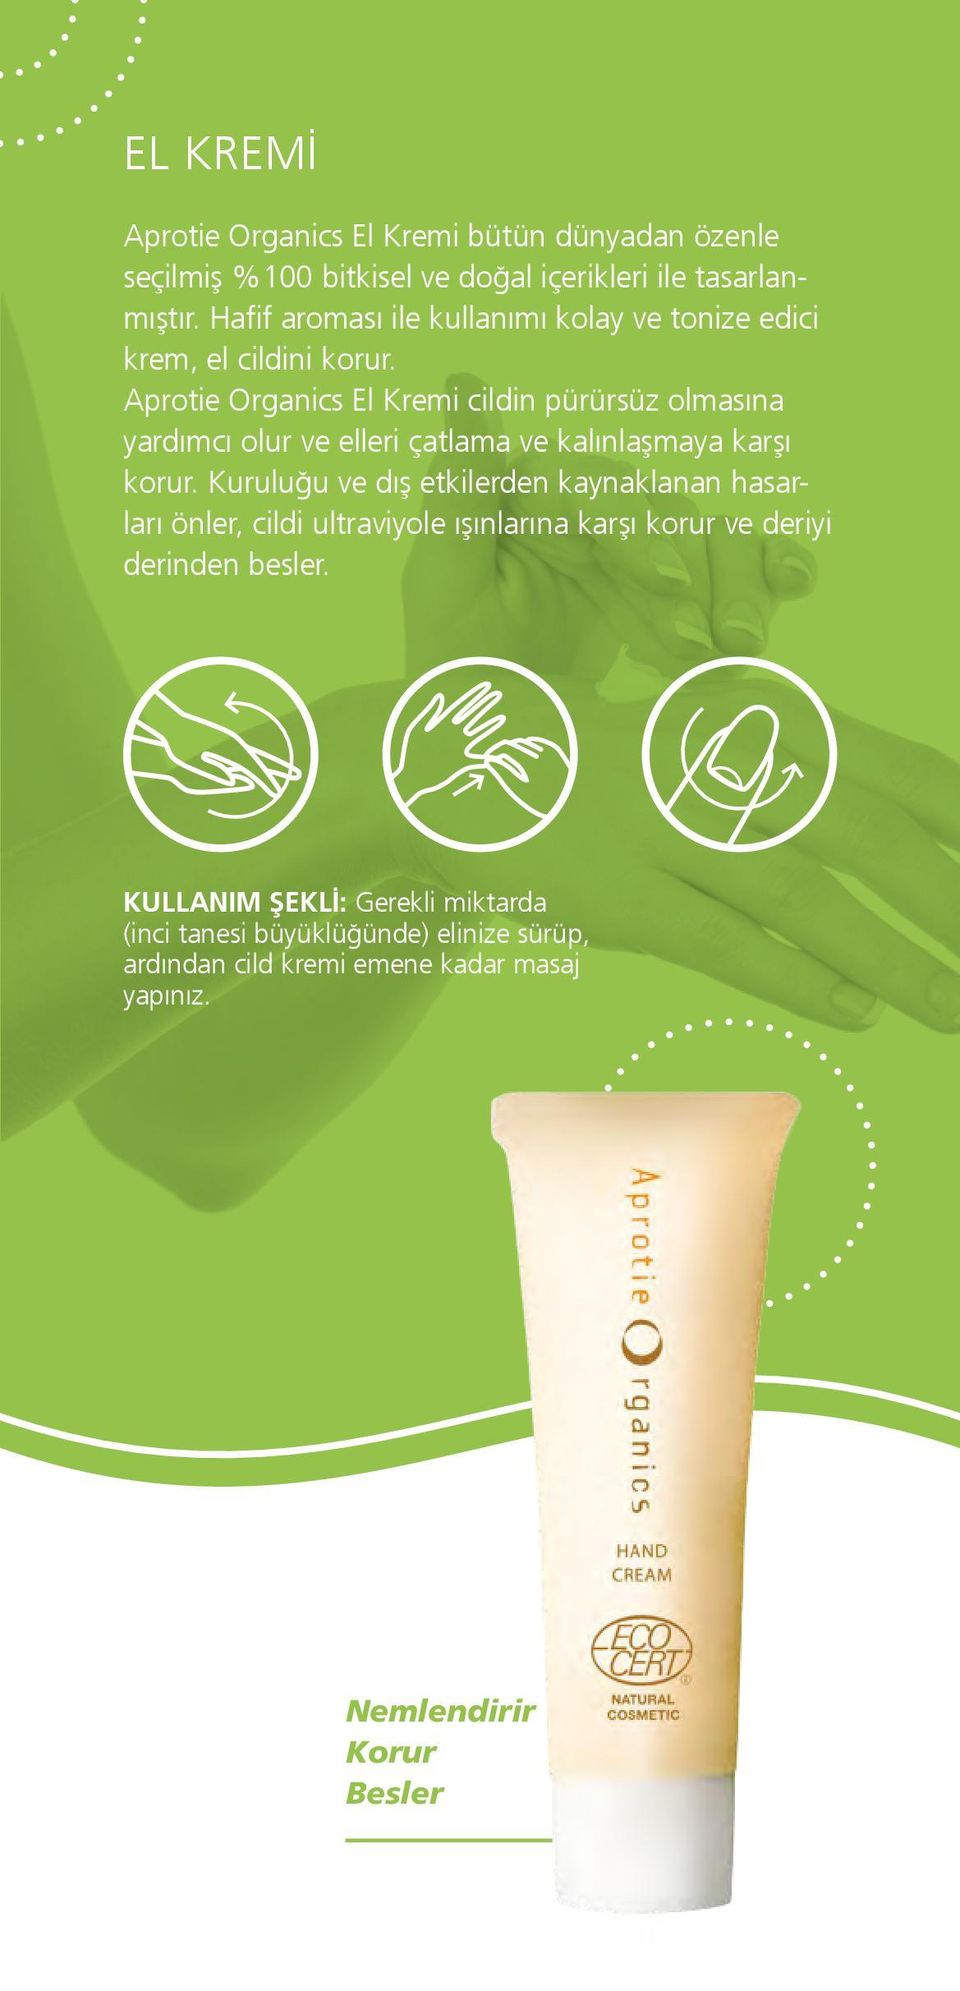 Aprotie Organics El Kremi cildin pürürsüz olmasına yardımcı olur ve elleri çatlama ve kalınlaşmaya karşı korur.